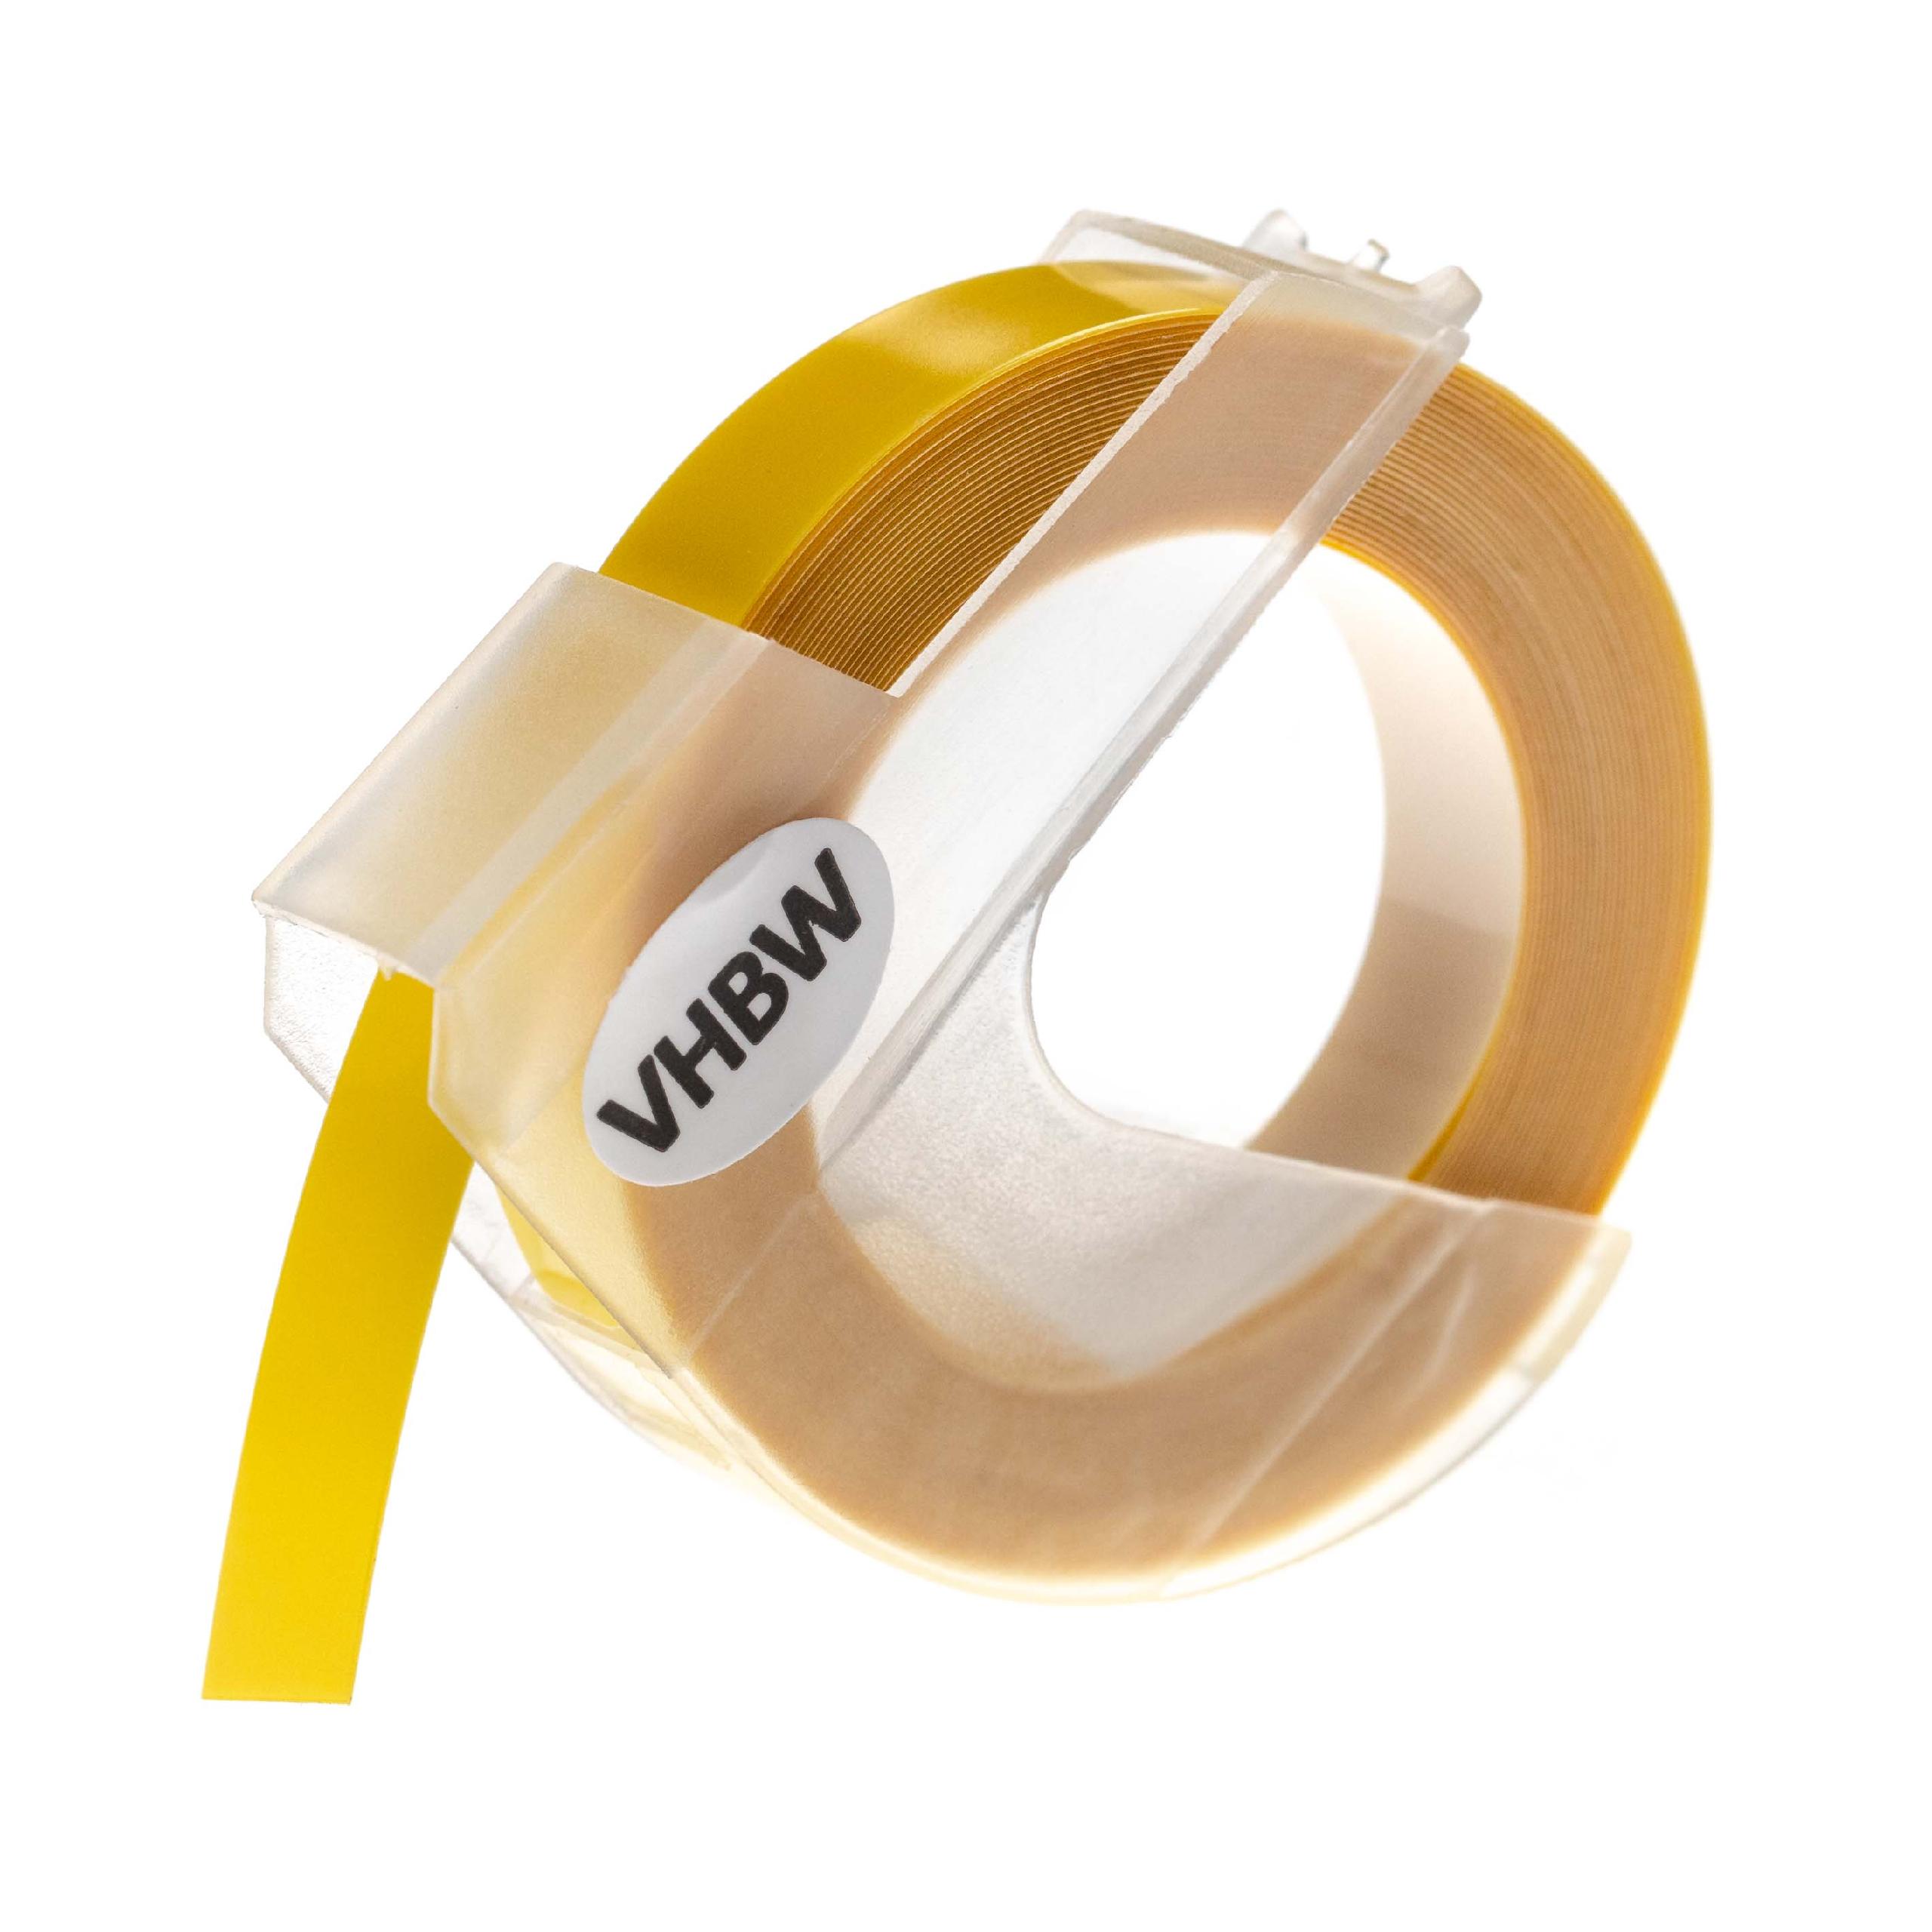 Casete cinta relieve 3D Casete cinta escritura reemplaza Dymo 0898220, S0898220 Blanco su Amarillo claro